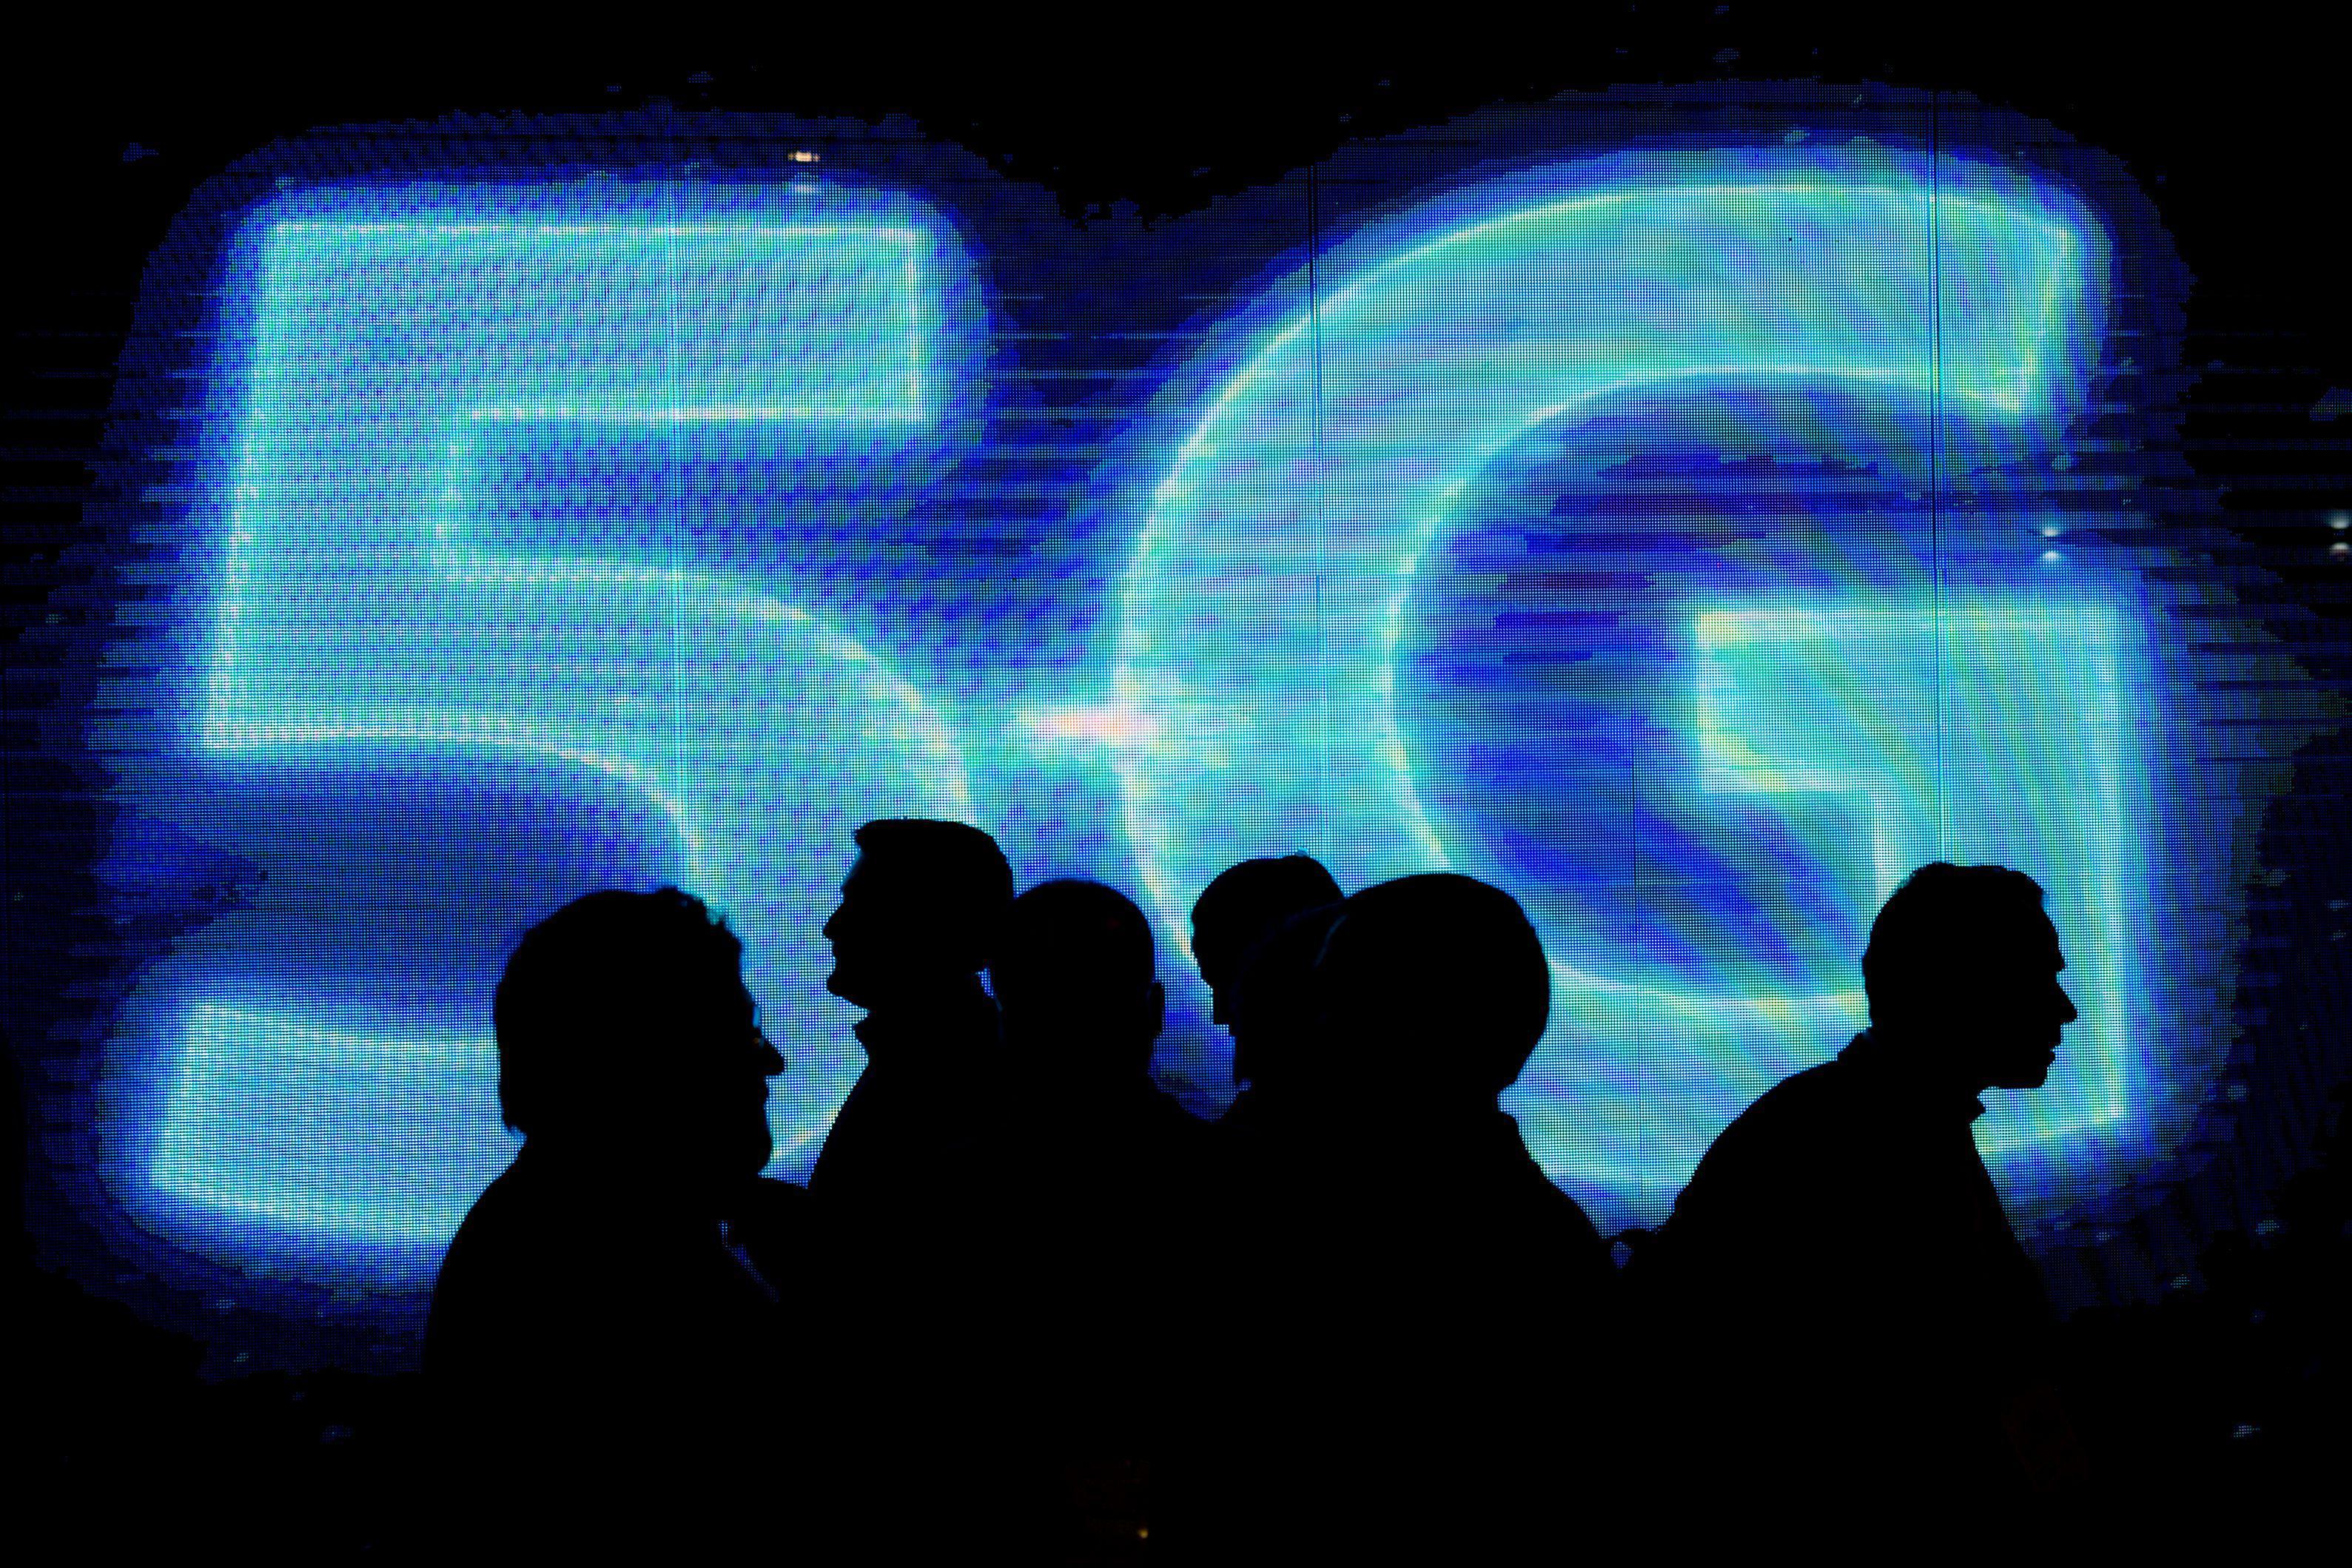   Бывший канцлер Филипп Хаммонд объявил об инвестициях в 16 миллионов фунтов стерлингов в британскую сеть мобильной связи 5G